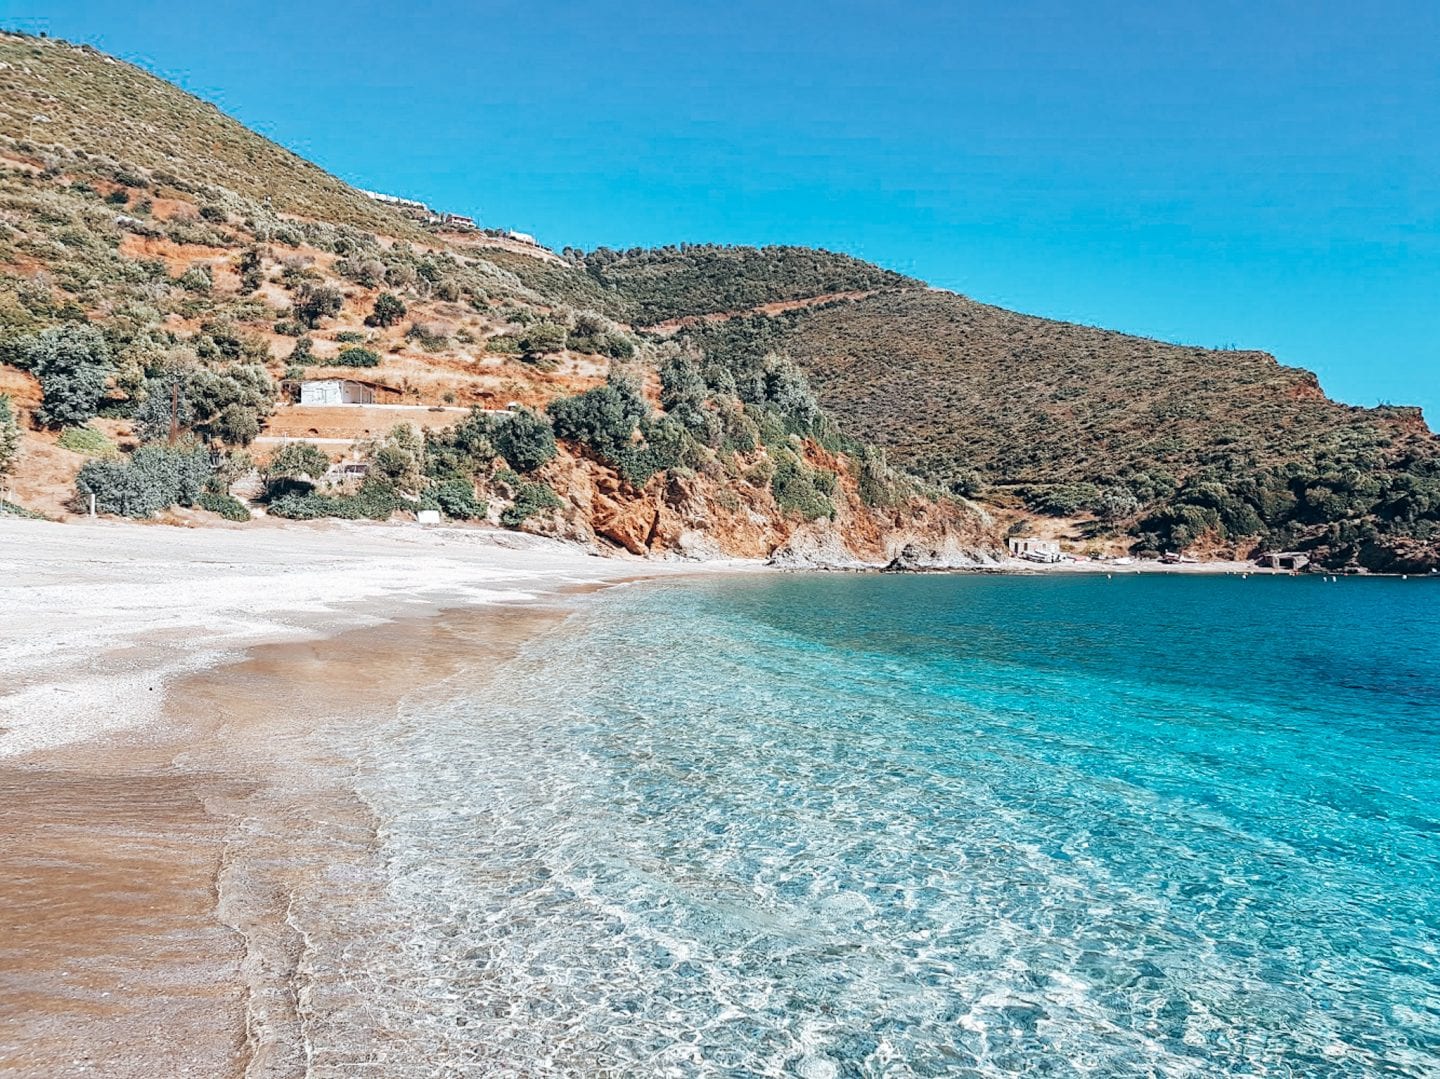 Kristallklares Meer in Griechenland, Euböa, einem der schönsten Reiseziele in Europa.